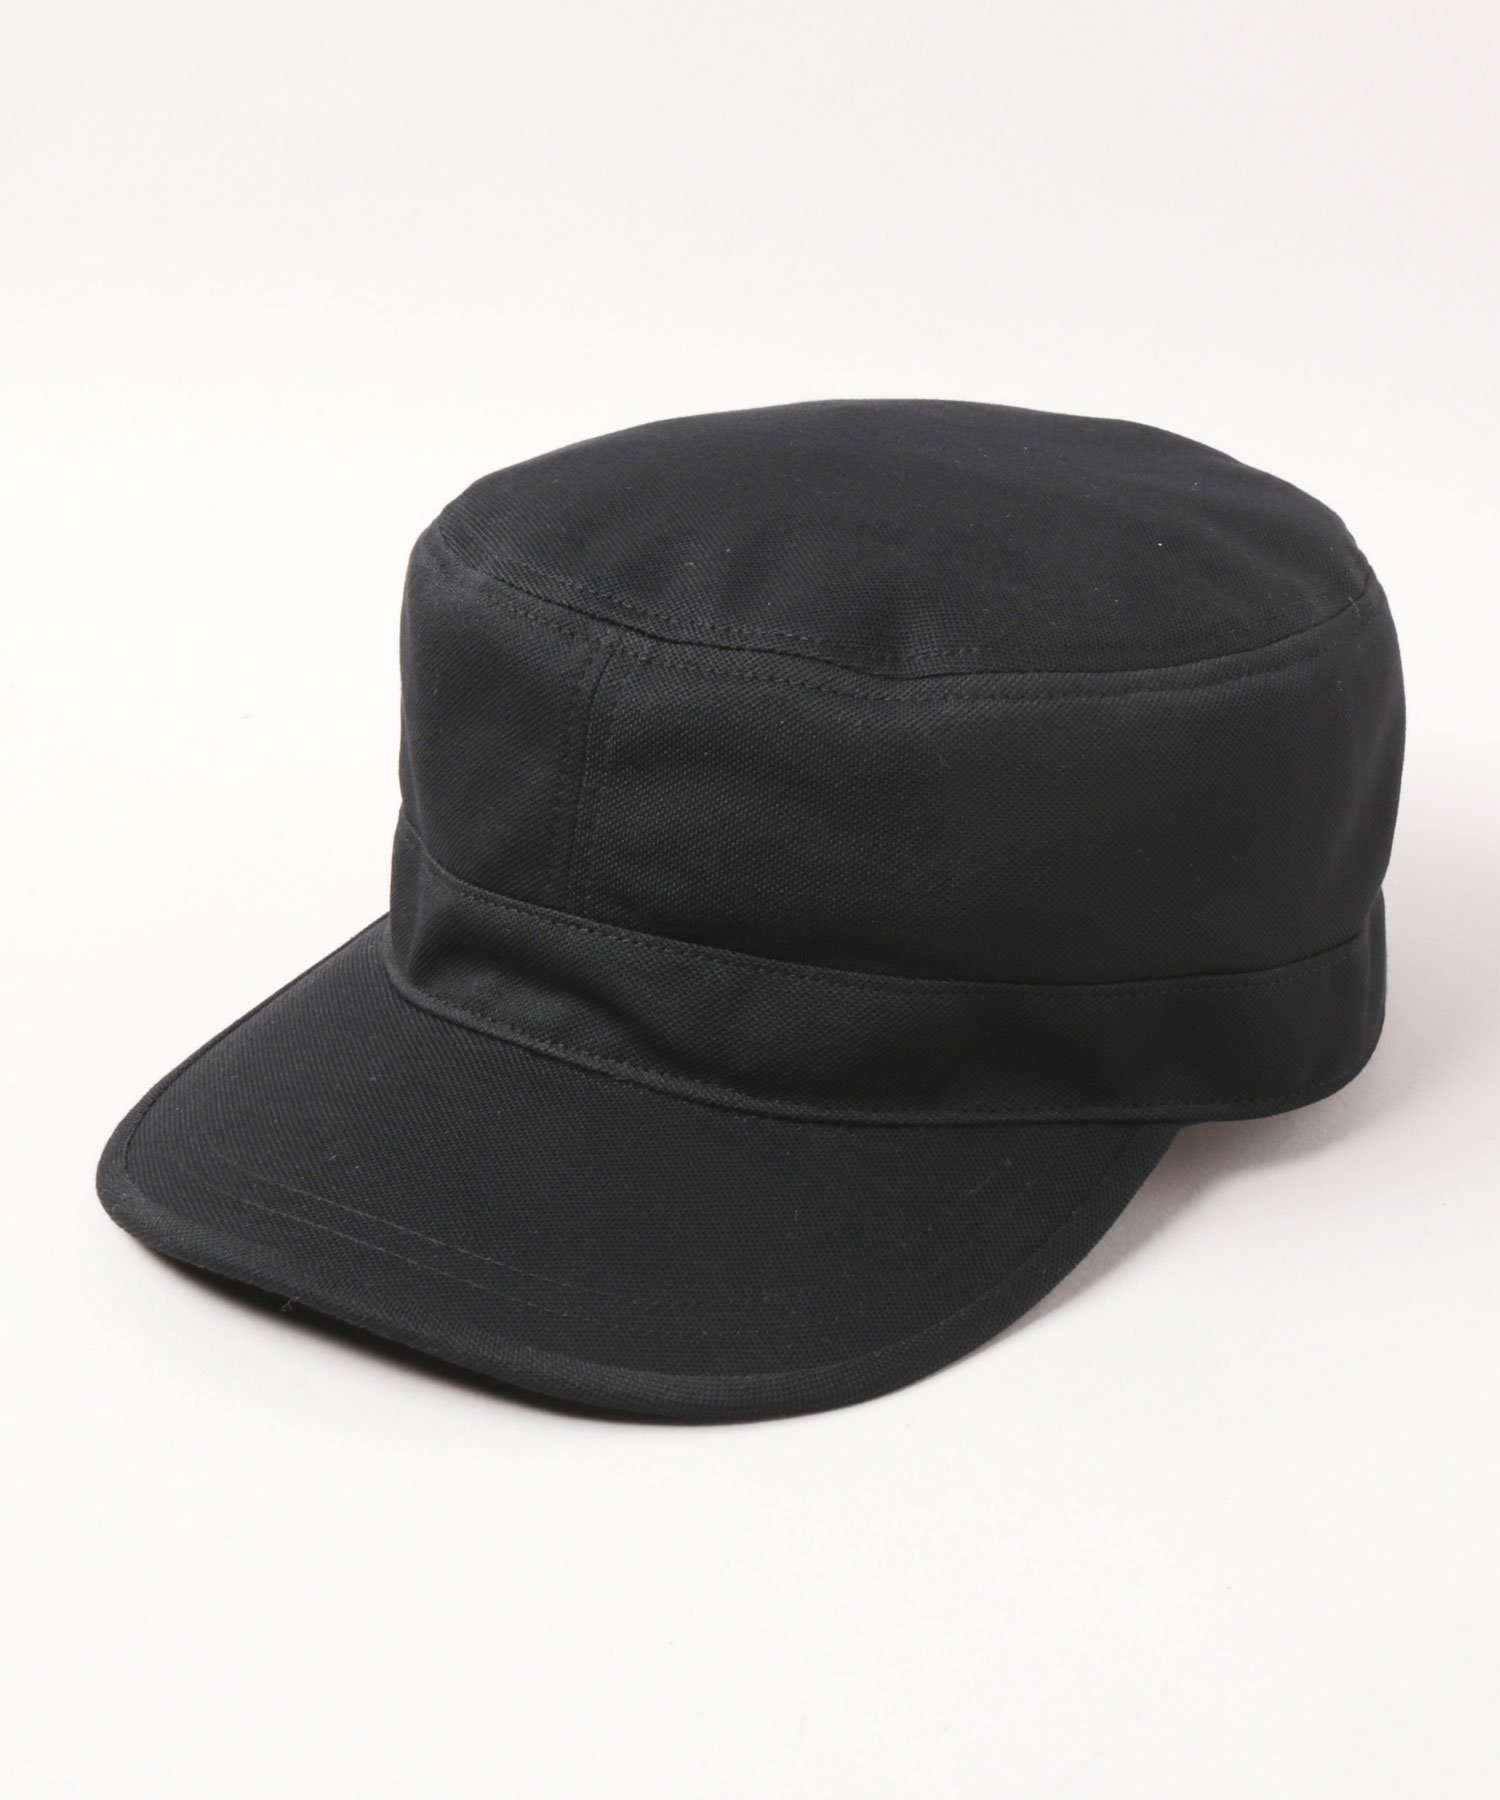 カシラ CA4LA WASHABLE BASIC WORKER SS10 カシラ 帽子 キャップ ブラック ブラウン ネイビー【送料無料】